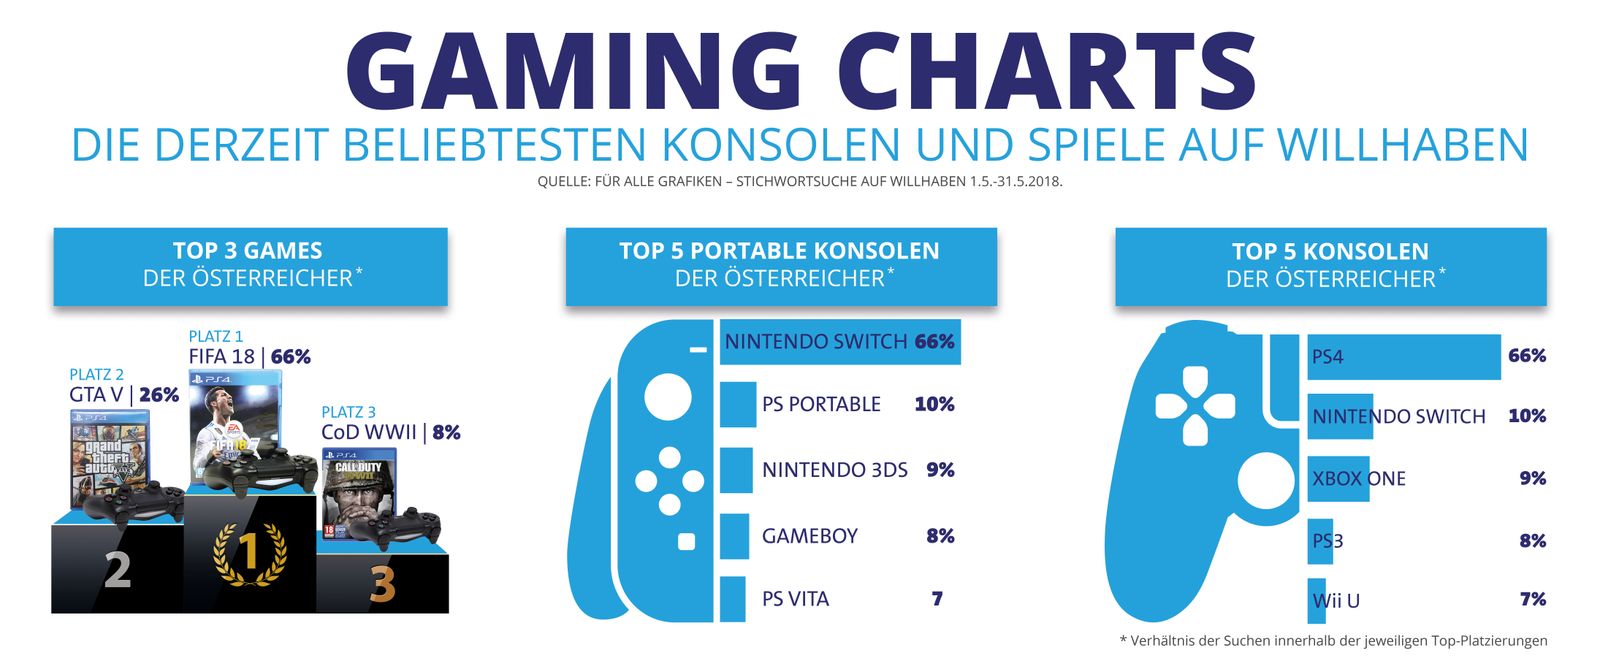 Das sind die populärsten Games und Konsolen der Österreicher - Games